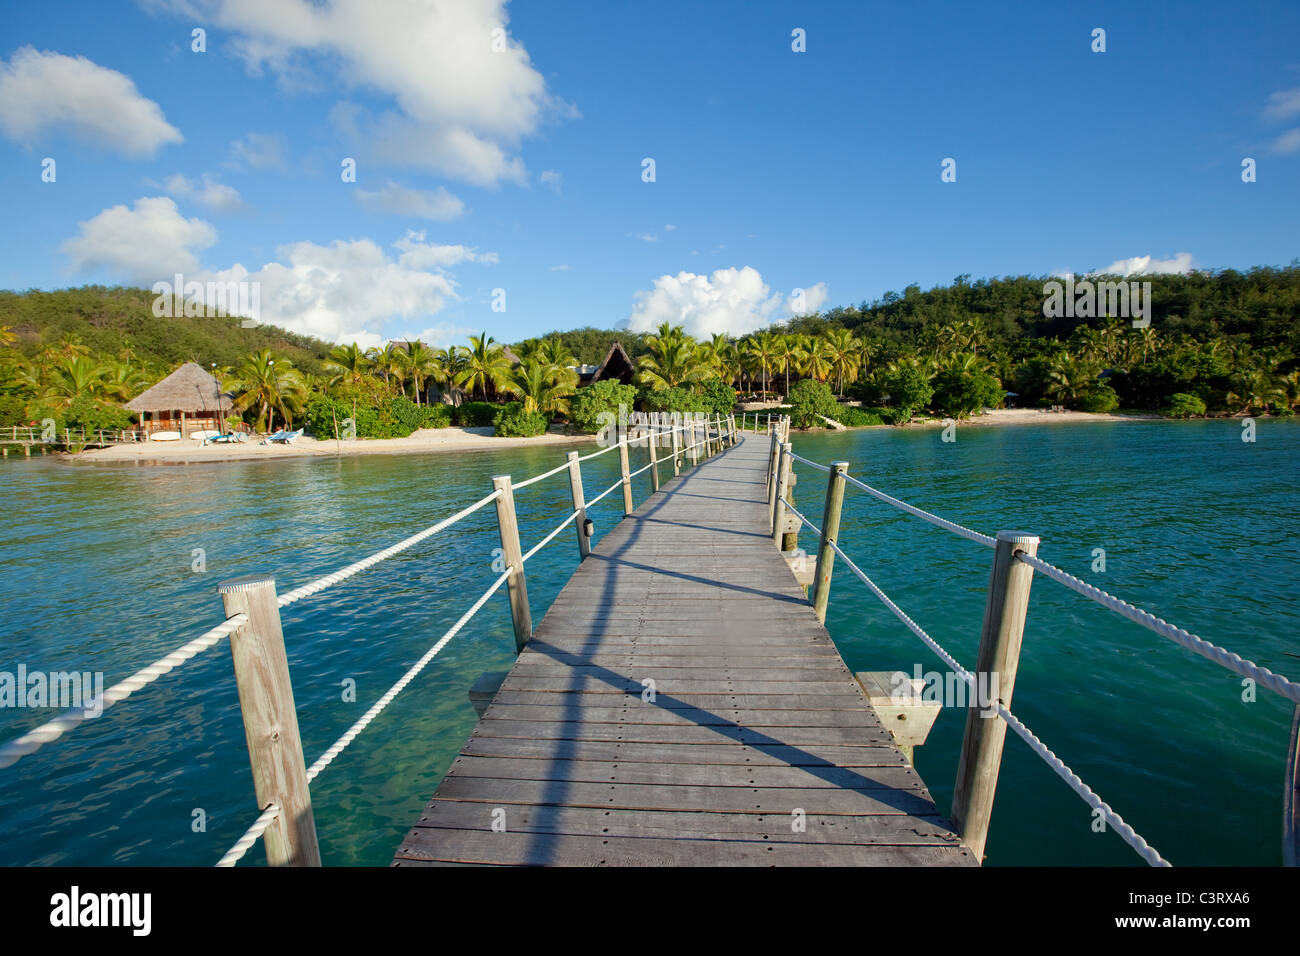 Likuliku Lagoon Resort, Malolo Island, Mamanucas, Fiji Stock Photo